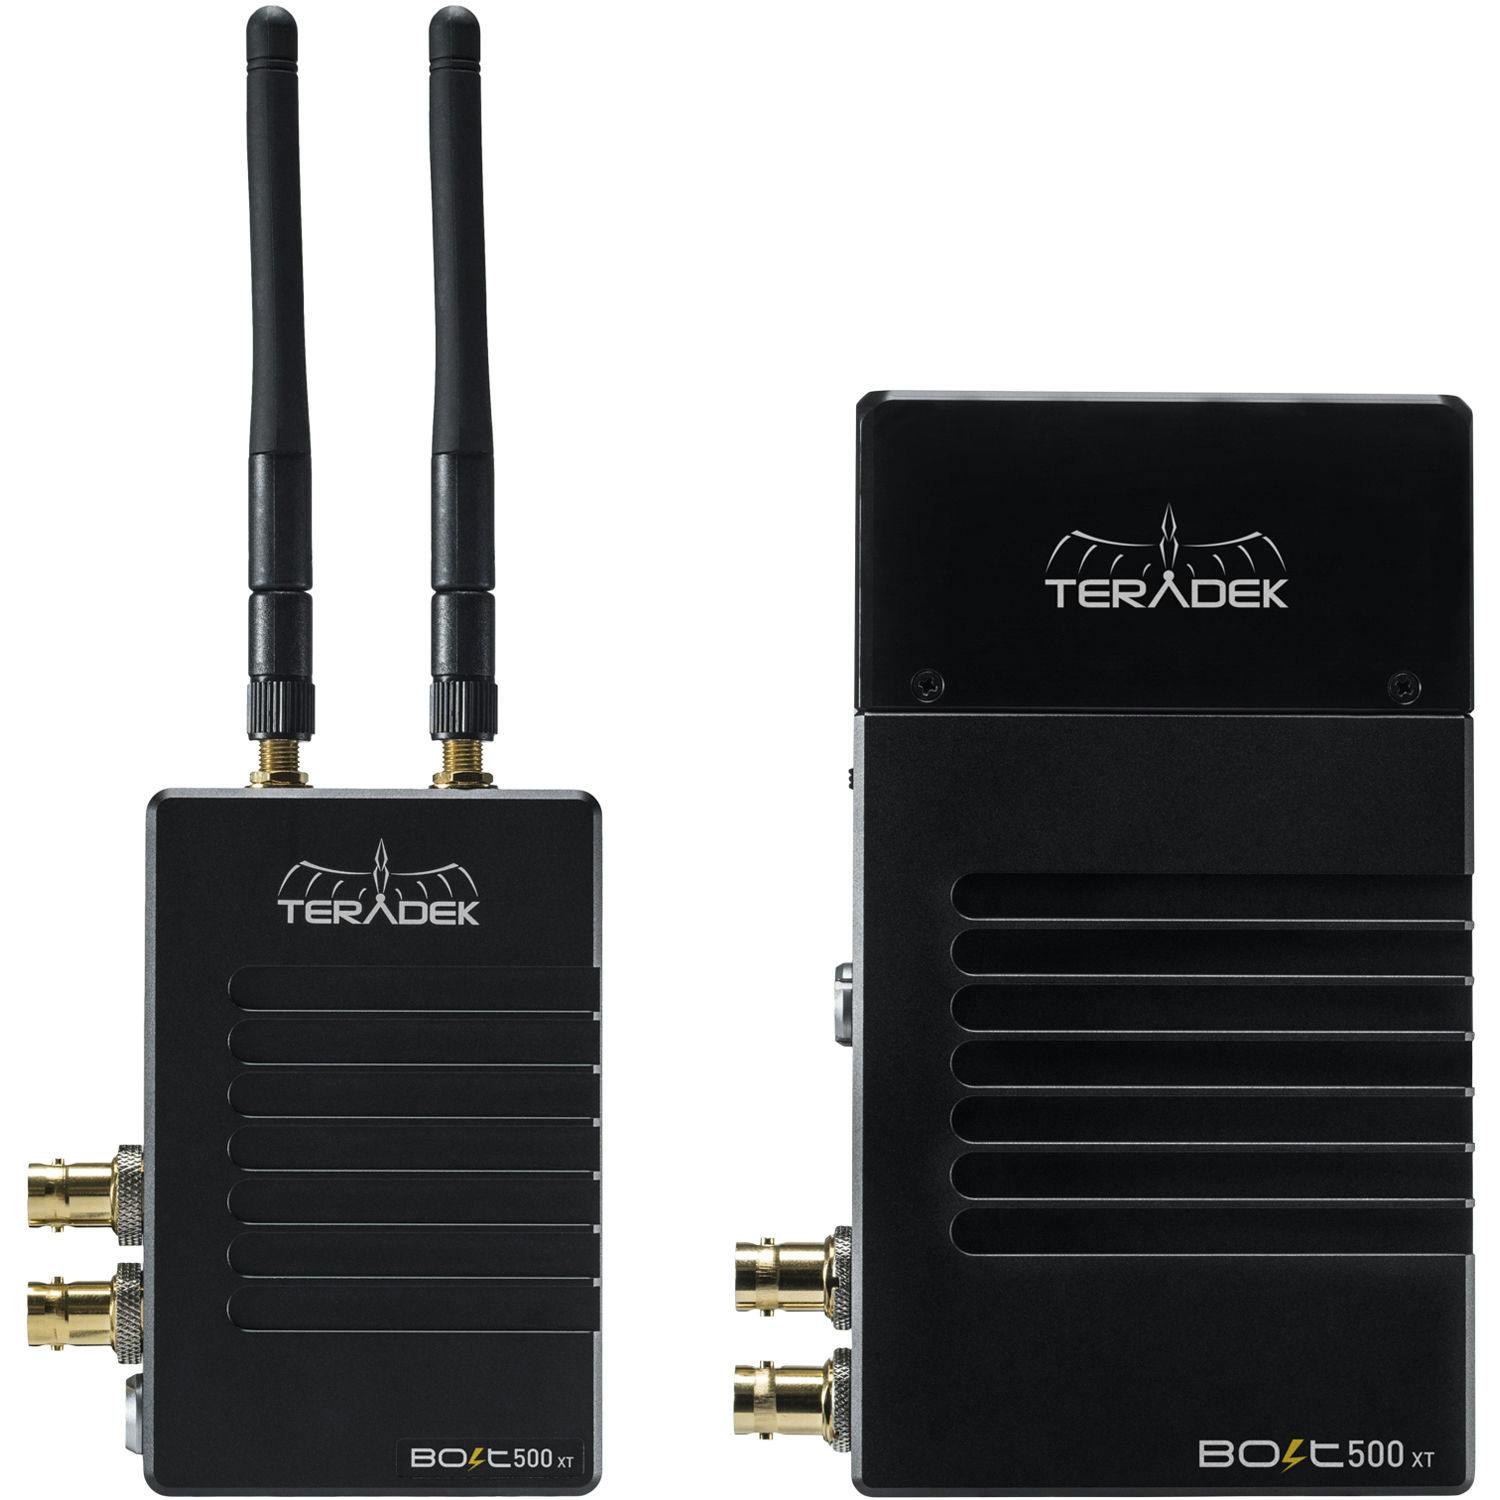 Teradek Bolt 500 XT SDI/HDMI Wireless TX/RX Deluxe V-Mount Kit